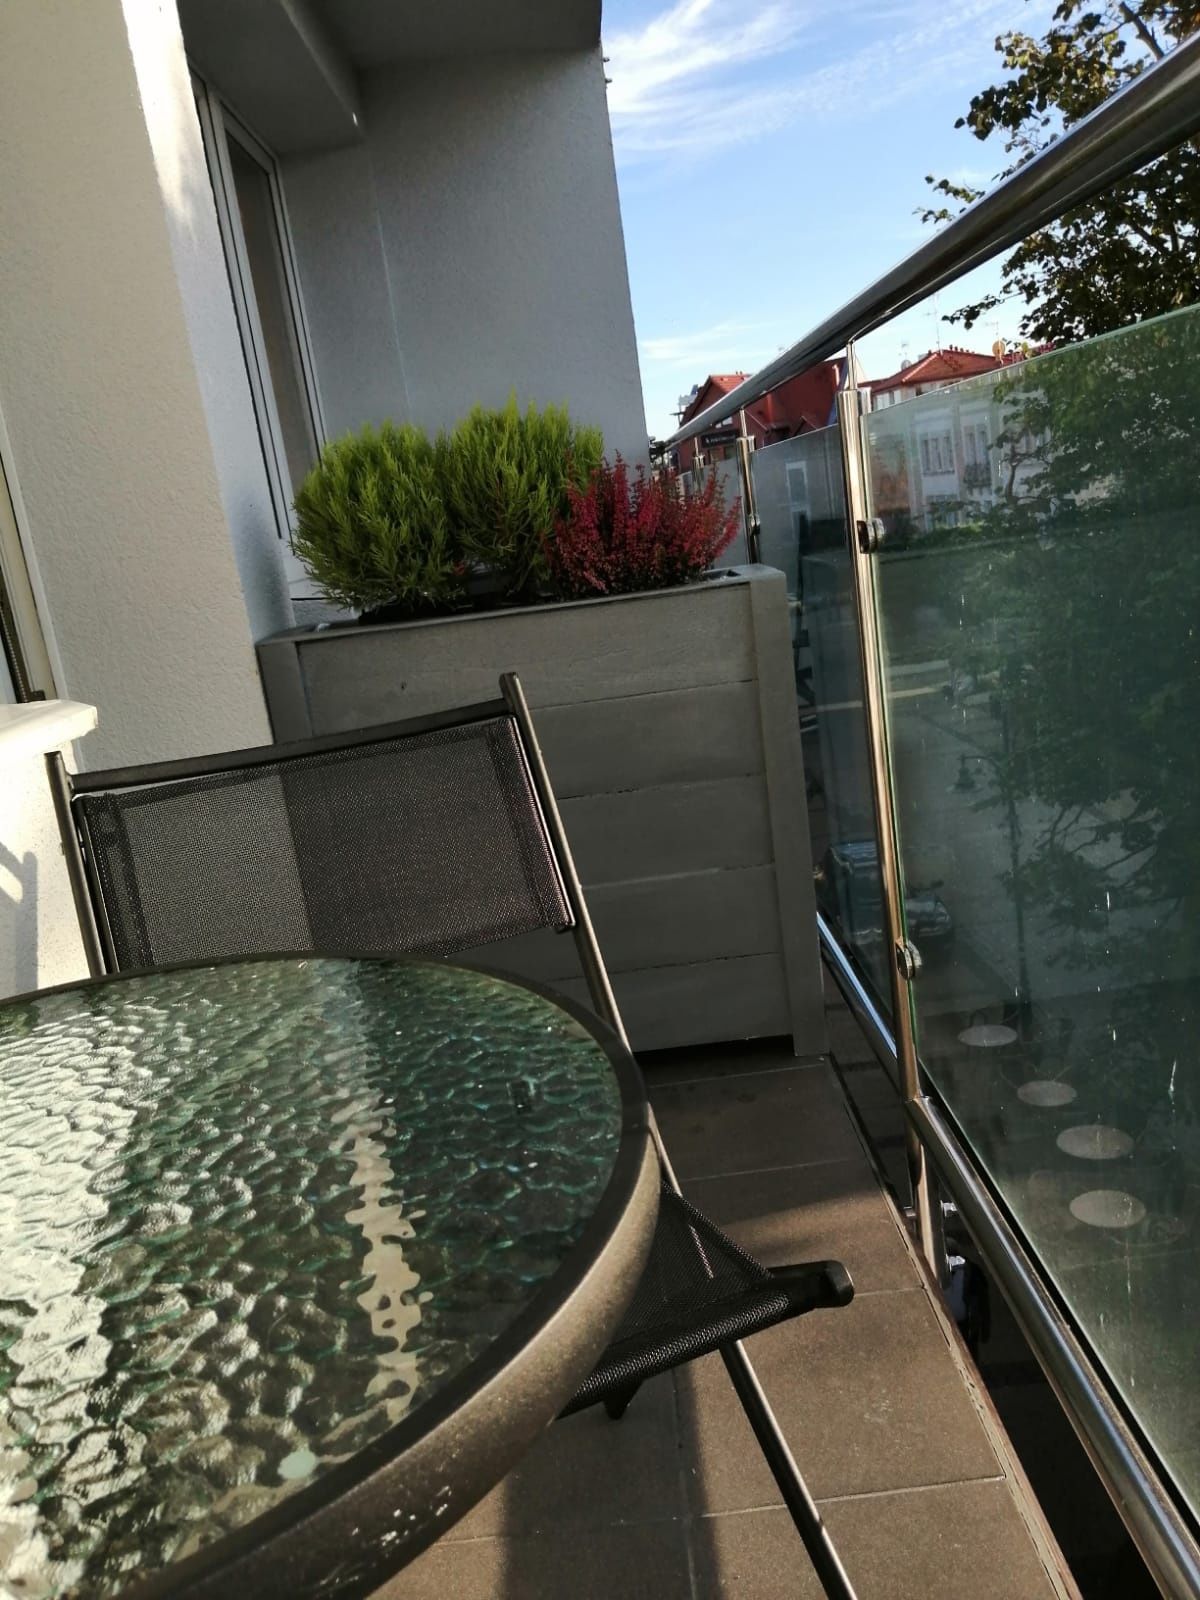 Apartementy i pokoje w Ustce blisko plazy (150m) Parking balkon